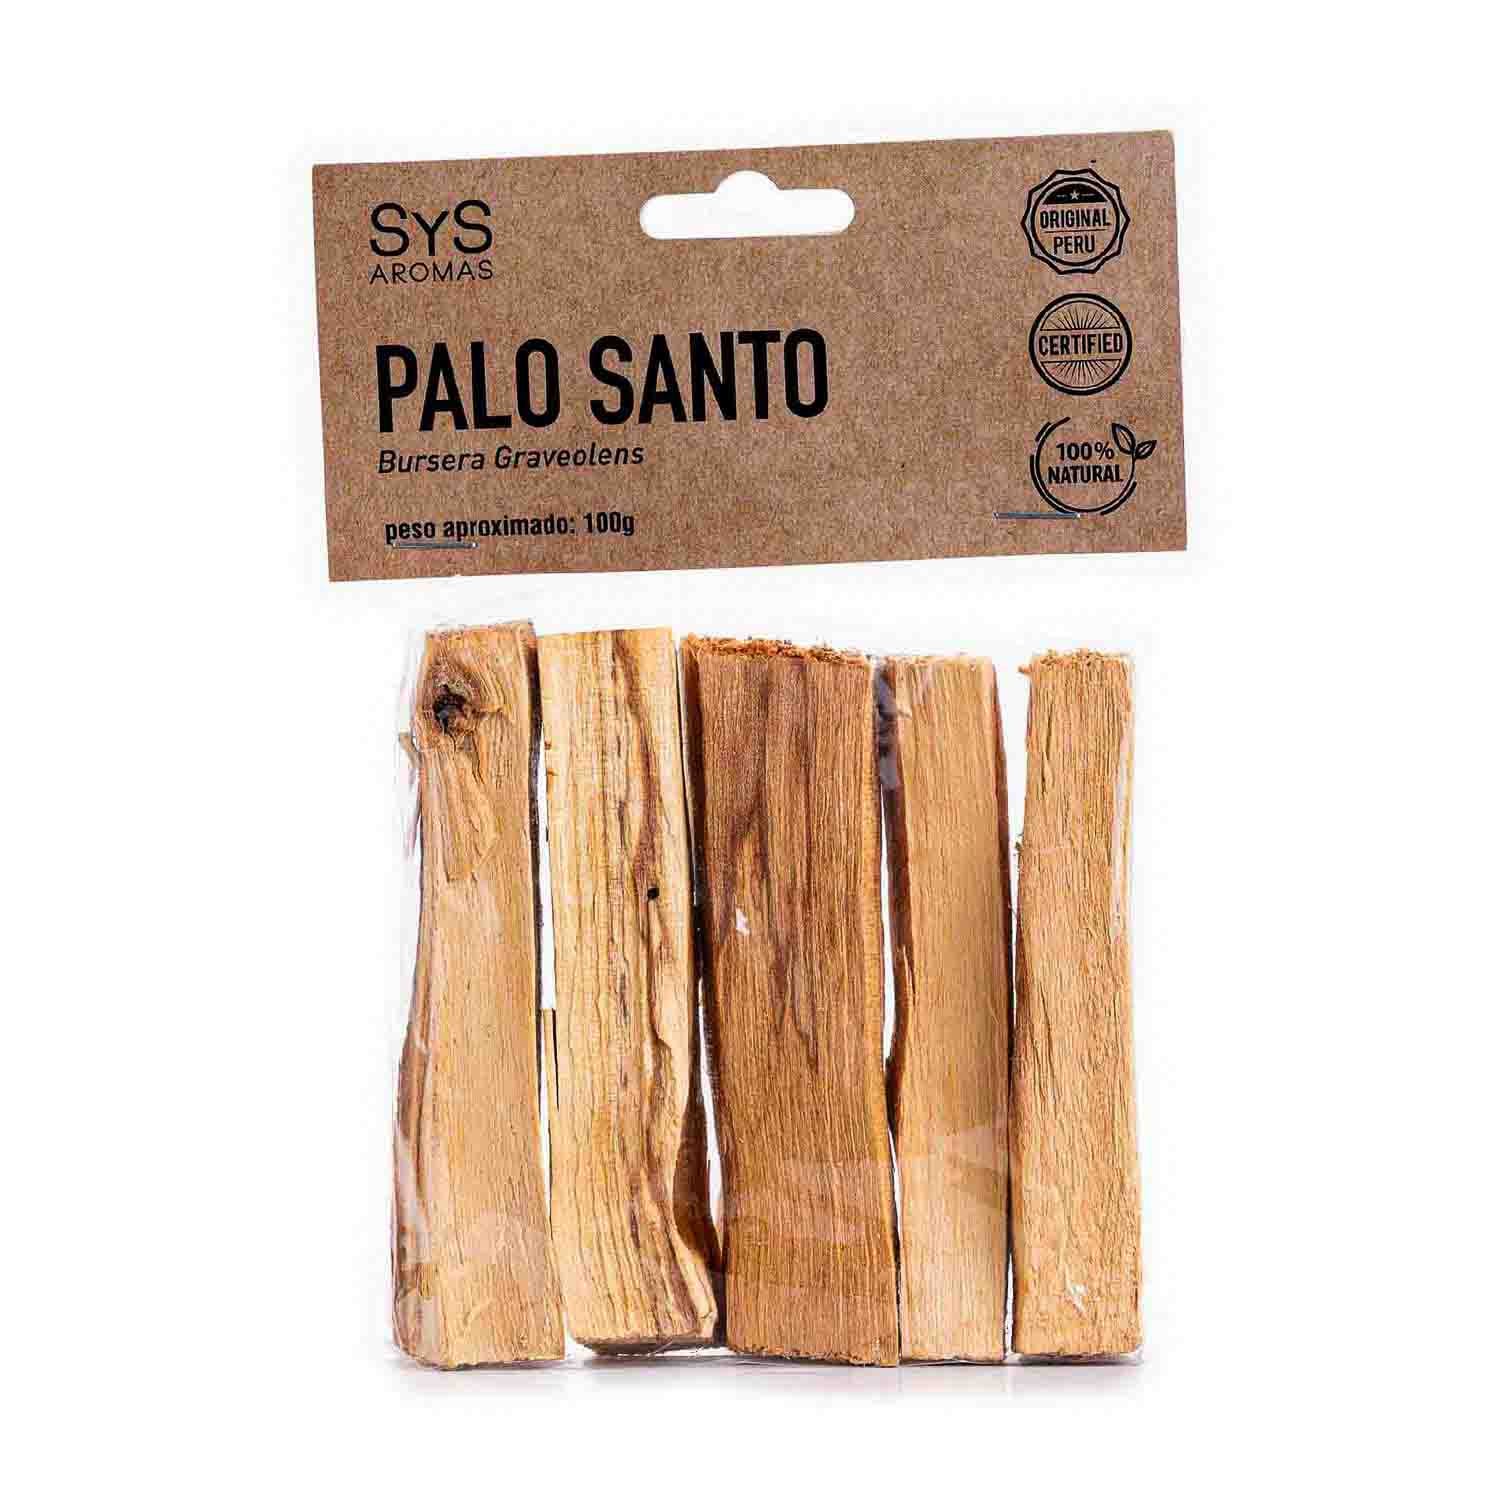 Palo Santo Premium para Quemar - Palo Santo Incienso 100% Natural